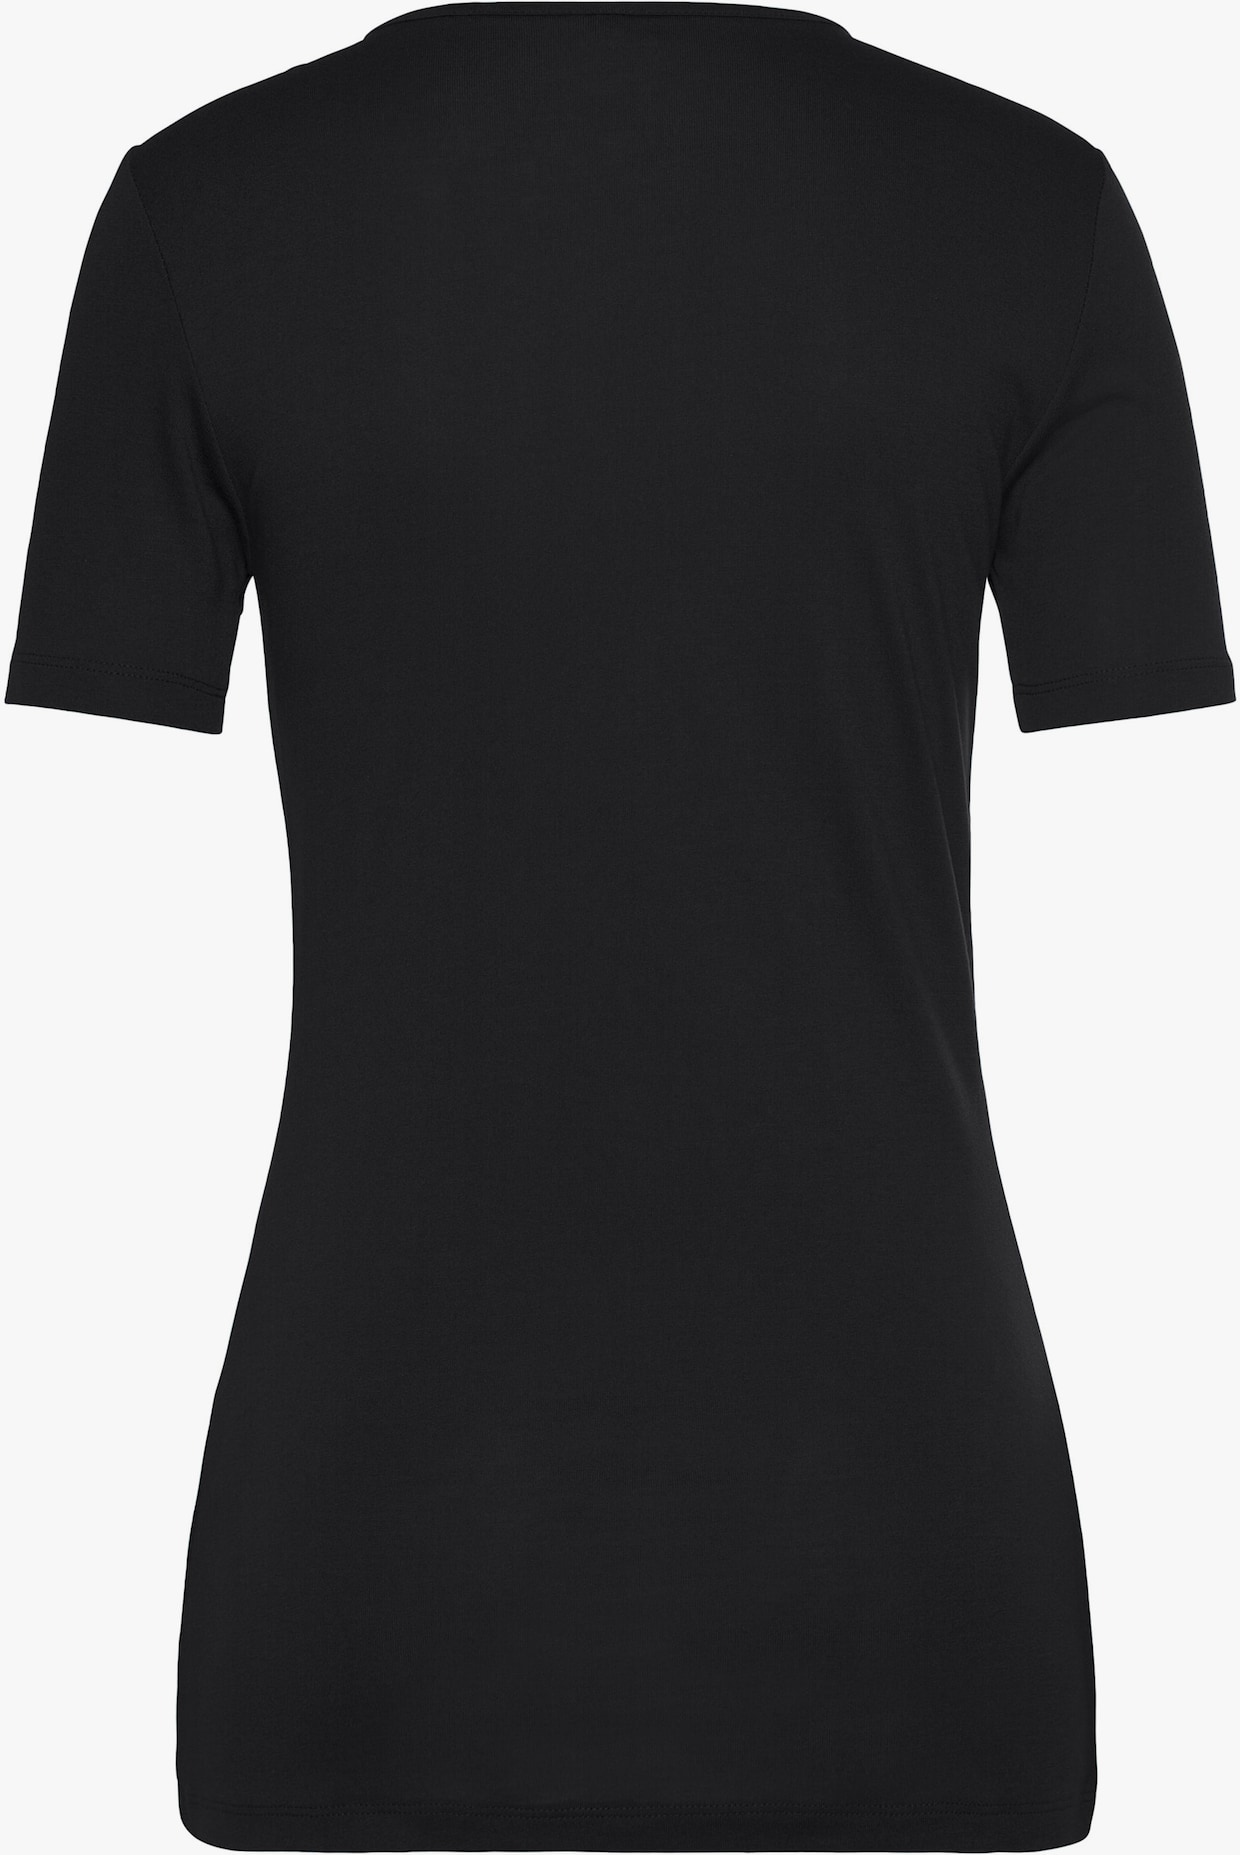 Vivance 2-in-1-Shirt - schwarz-weiß